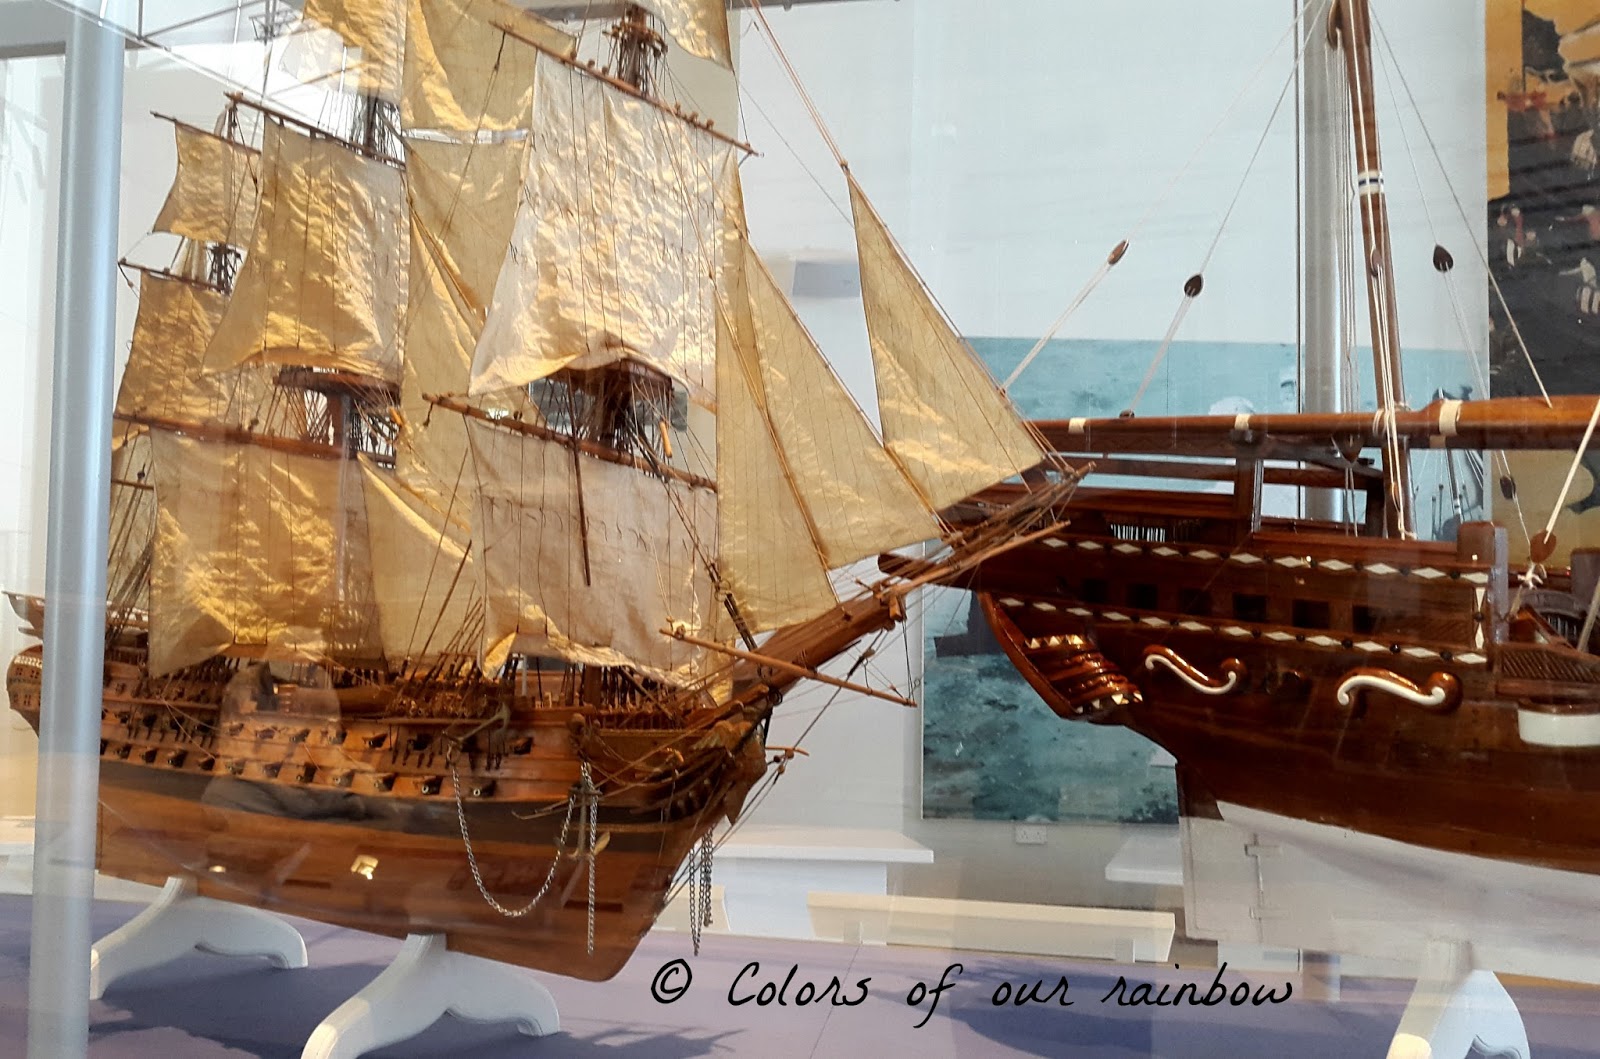 Sharjah maritime museum